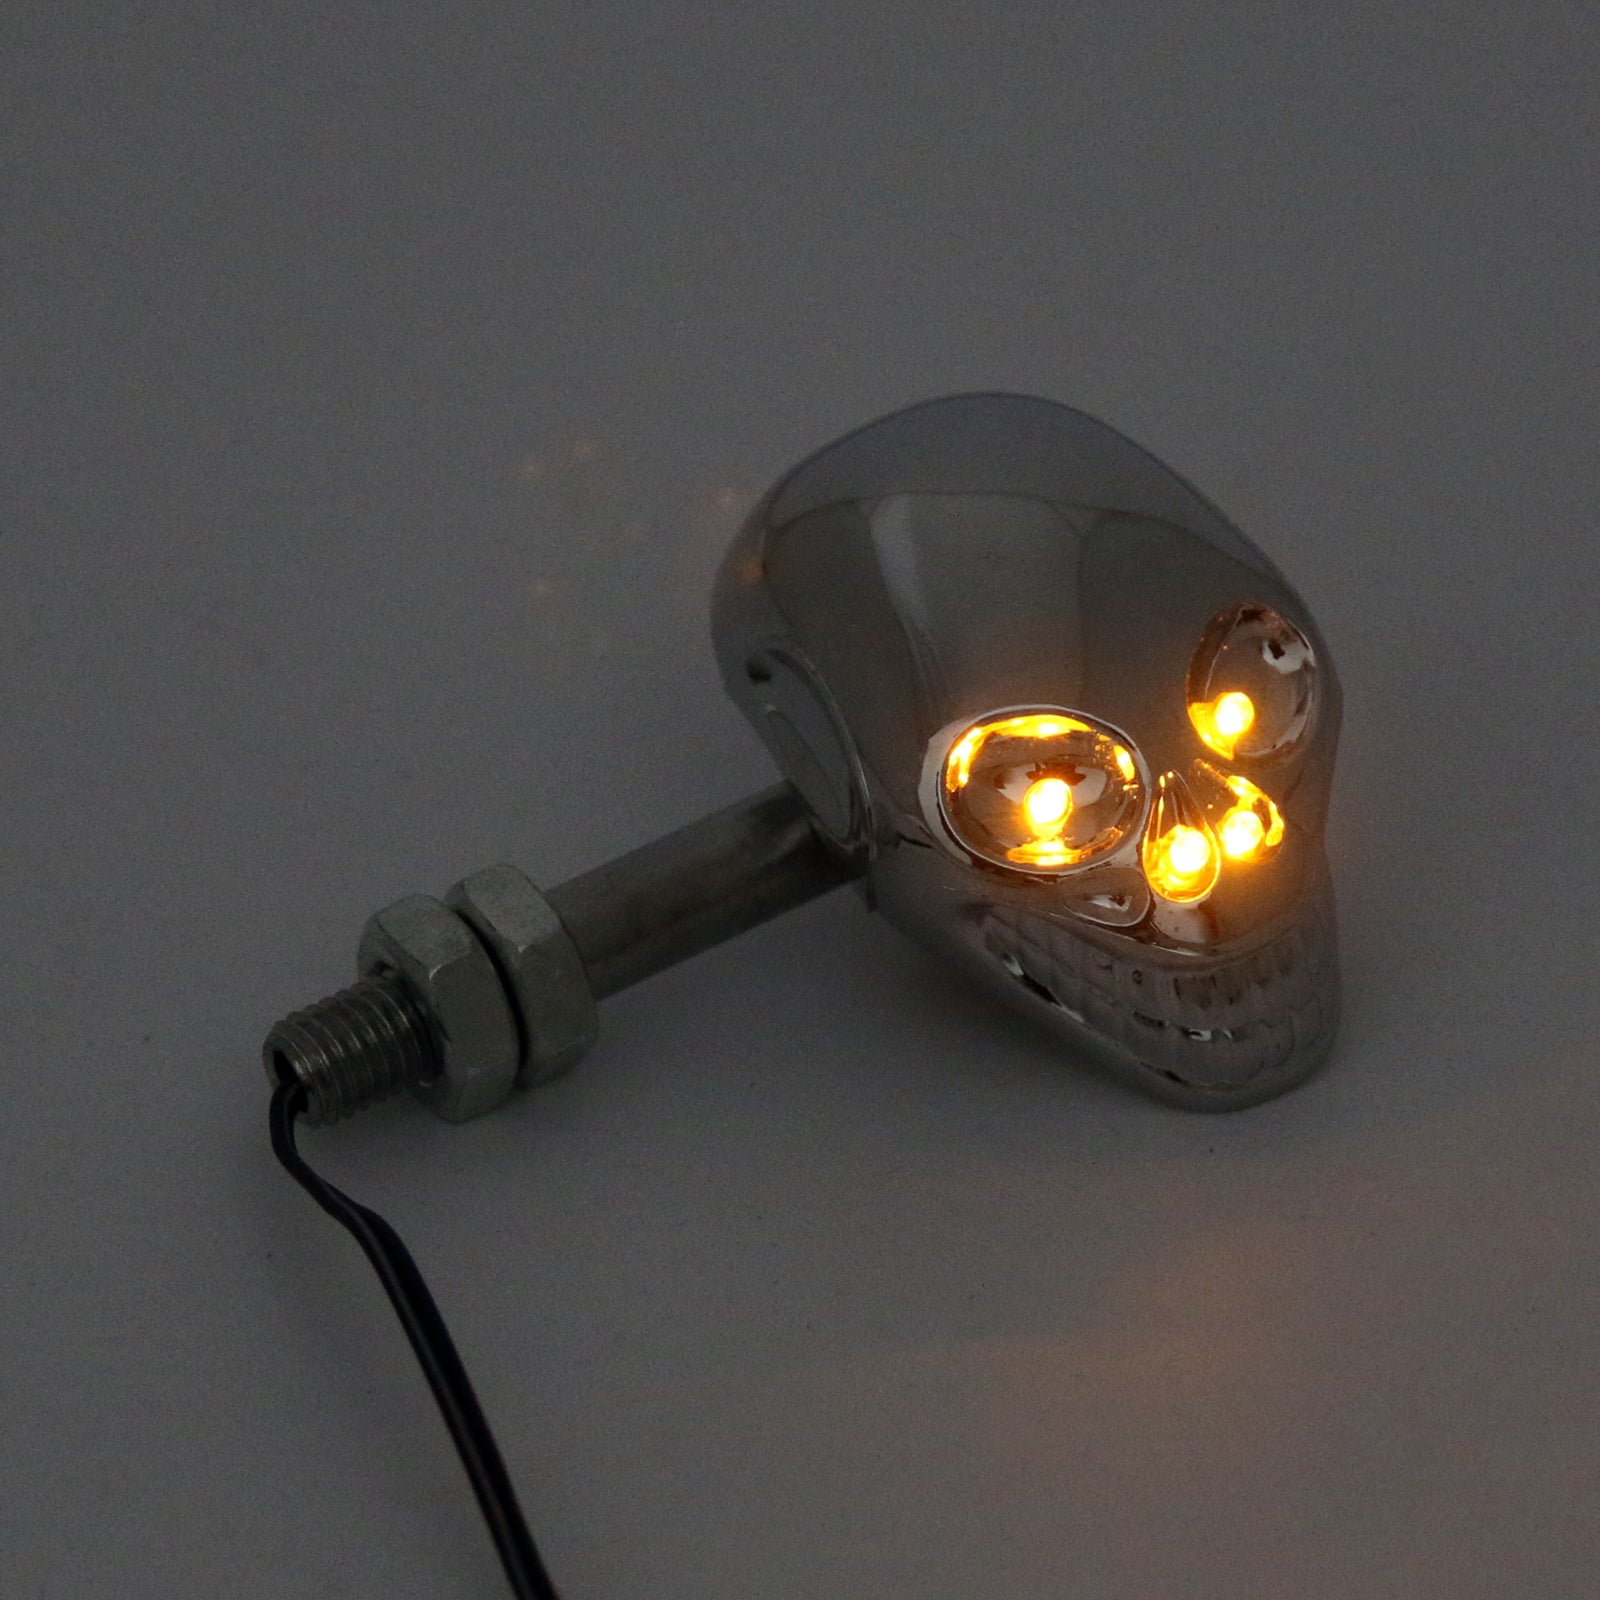 Motorrad-Schädel-Kopf-Blinker-Anzeige-Blinker-12V-LED-Licht-Lampe